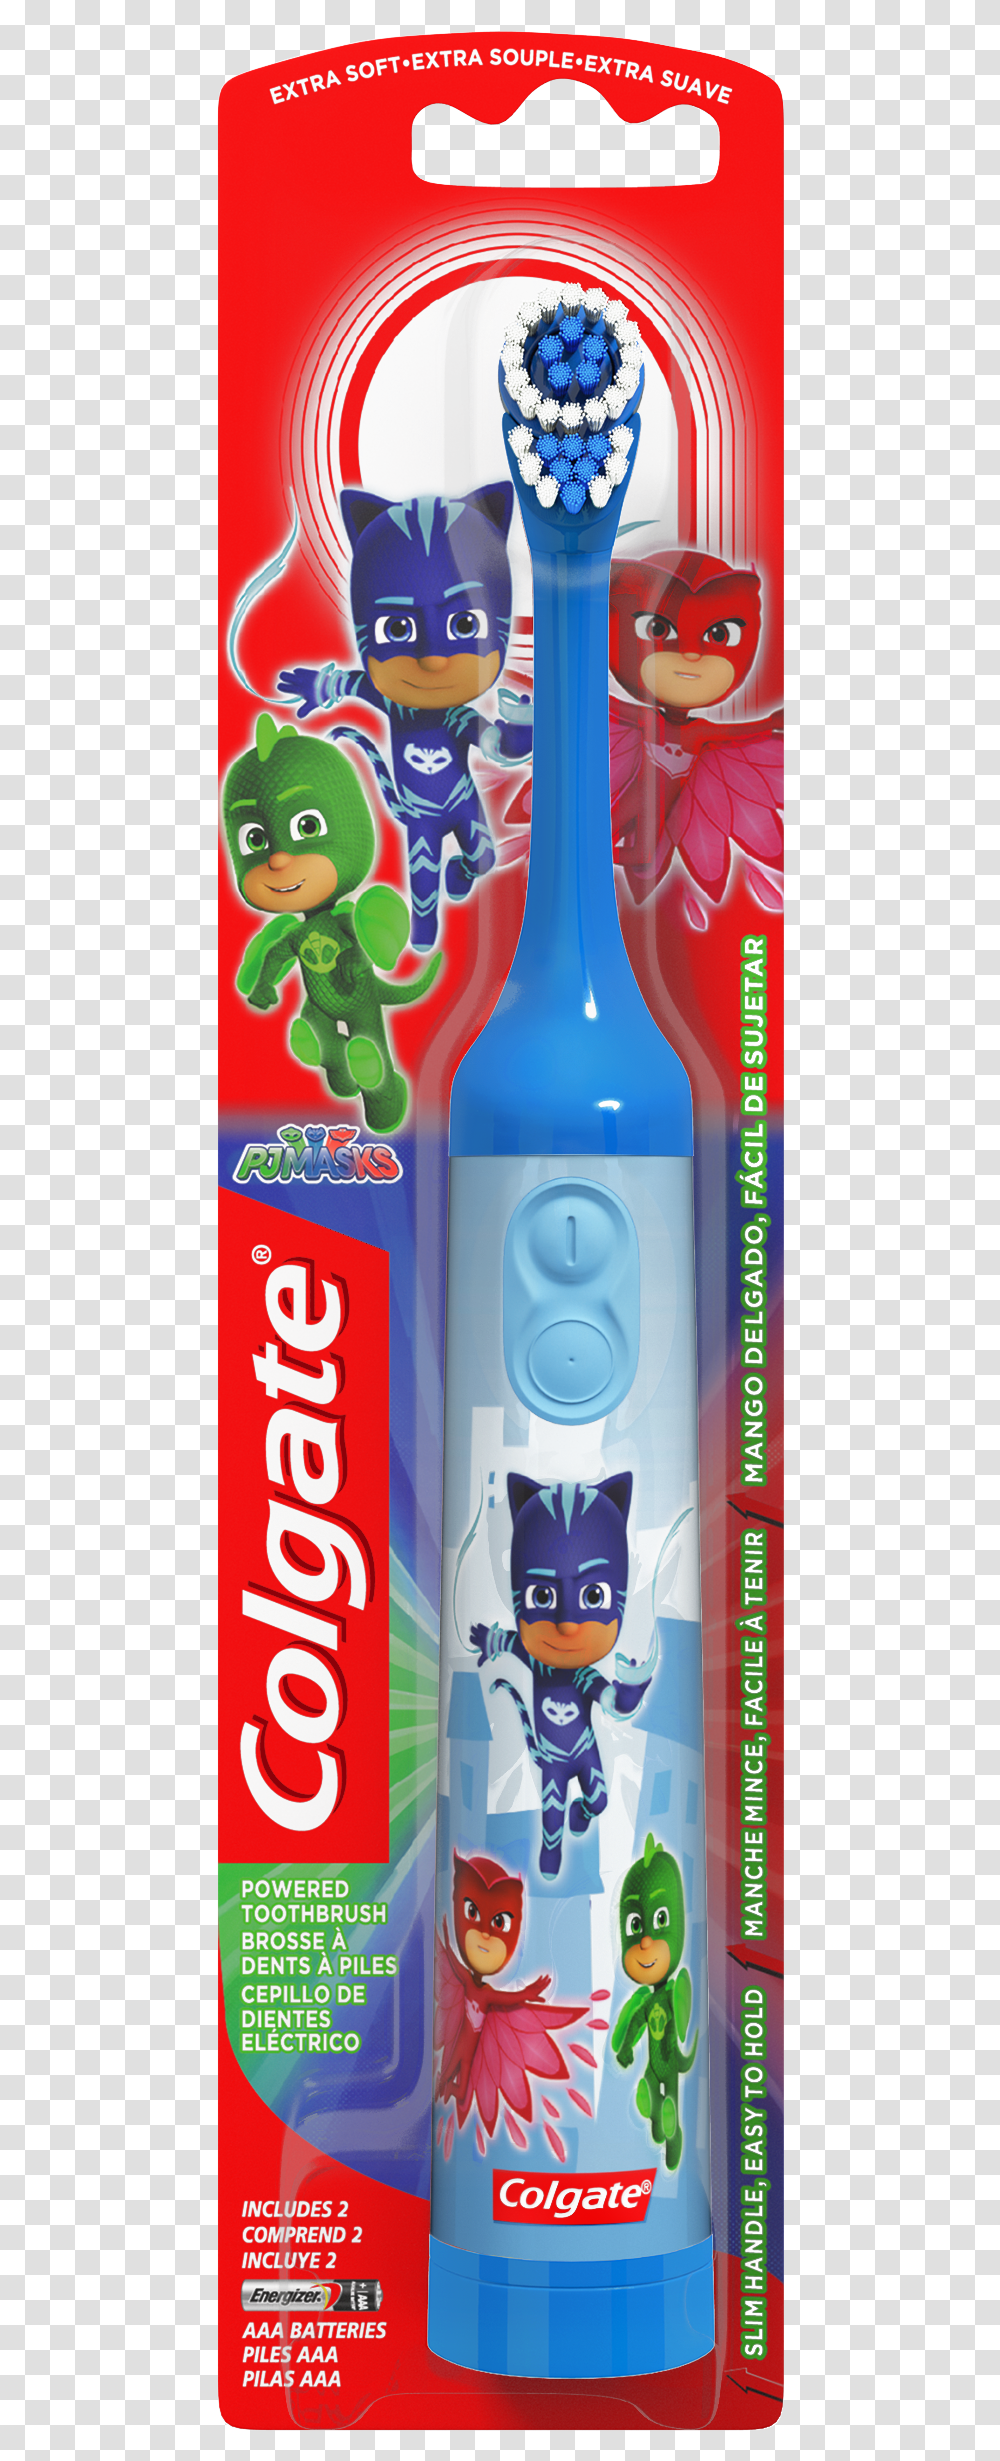 Colgate Pj Masks Toothbrush, Bottle, Beverage, Alcohol, Soda Transparent Png